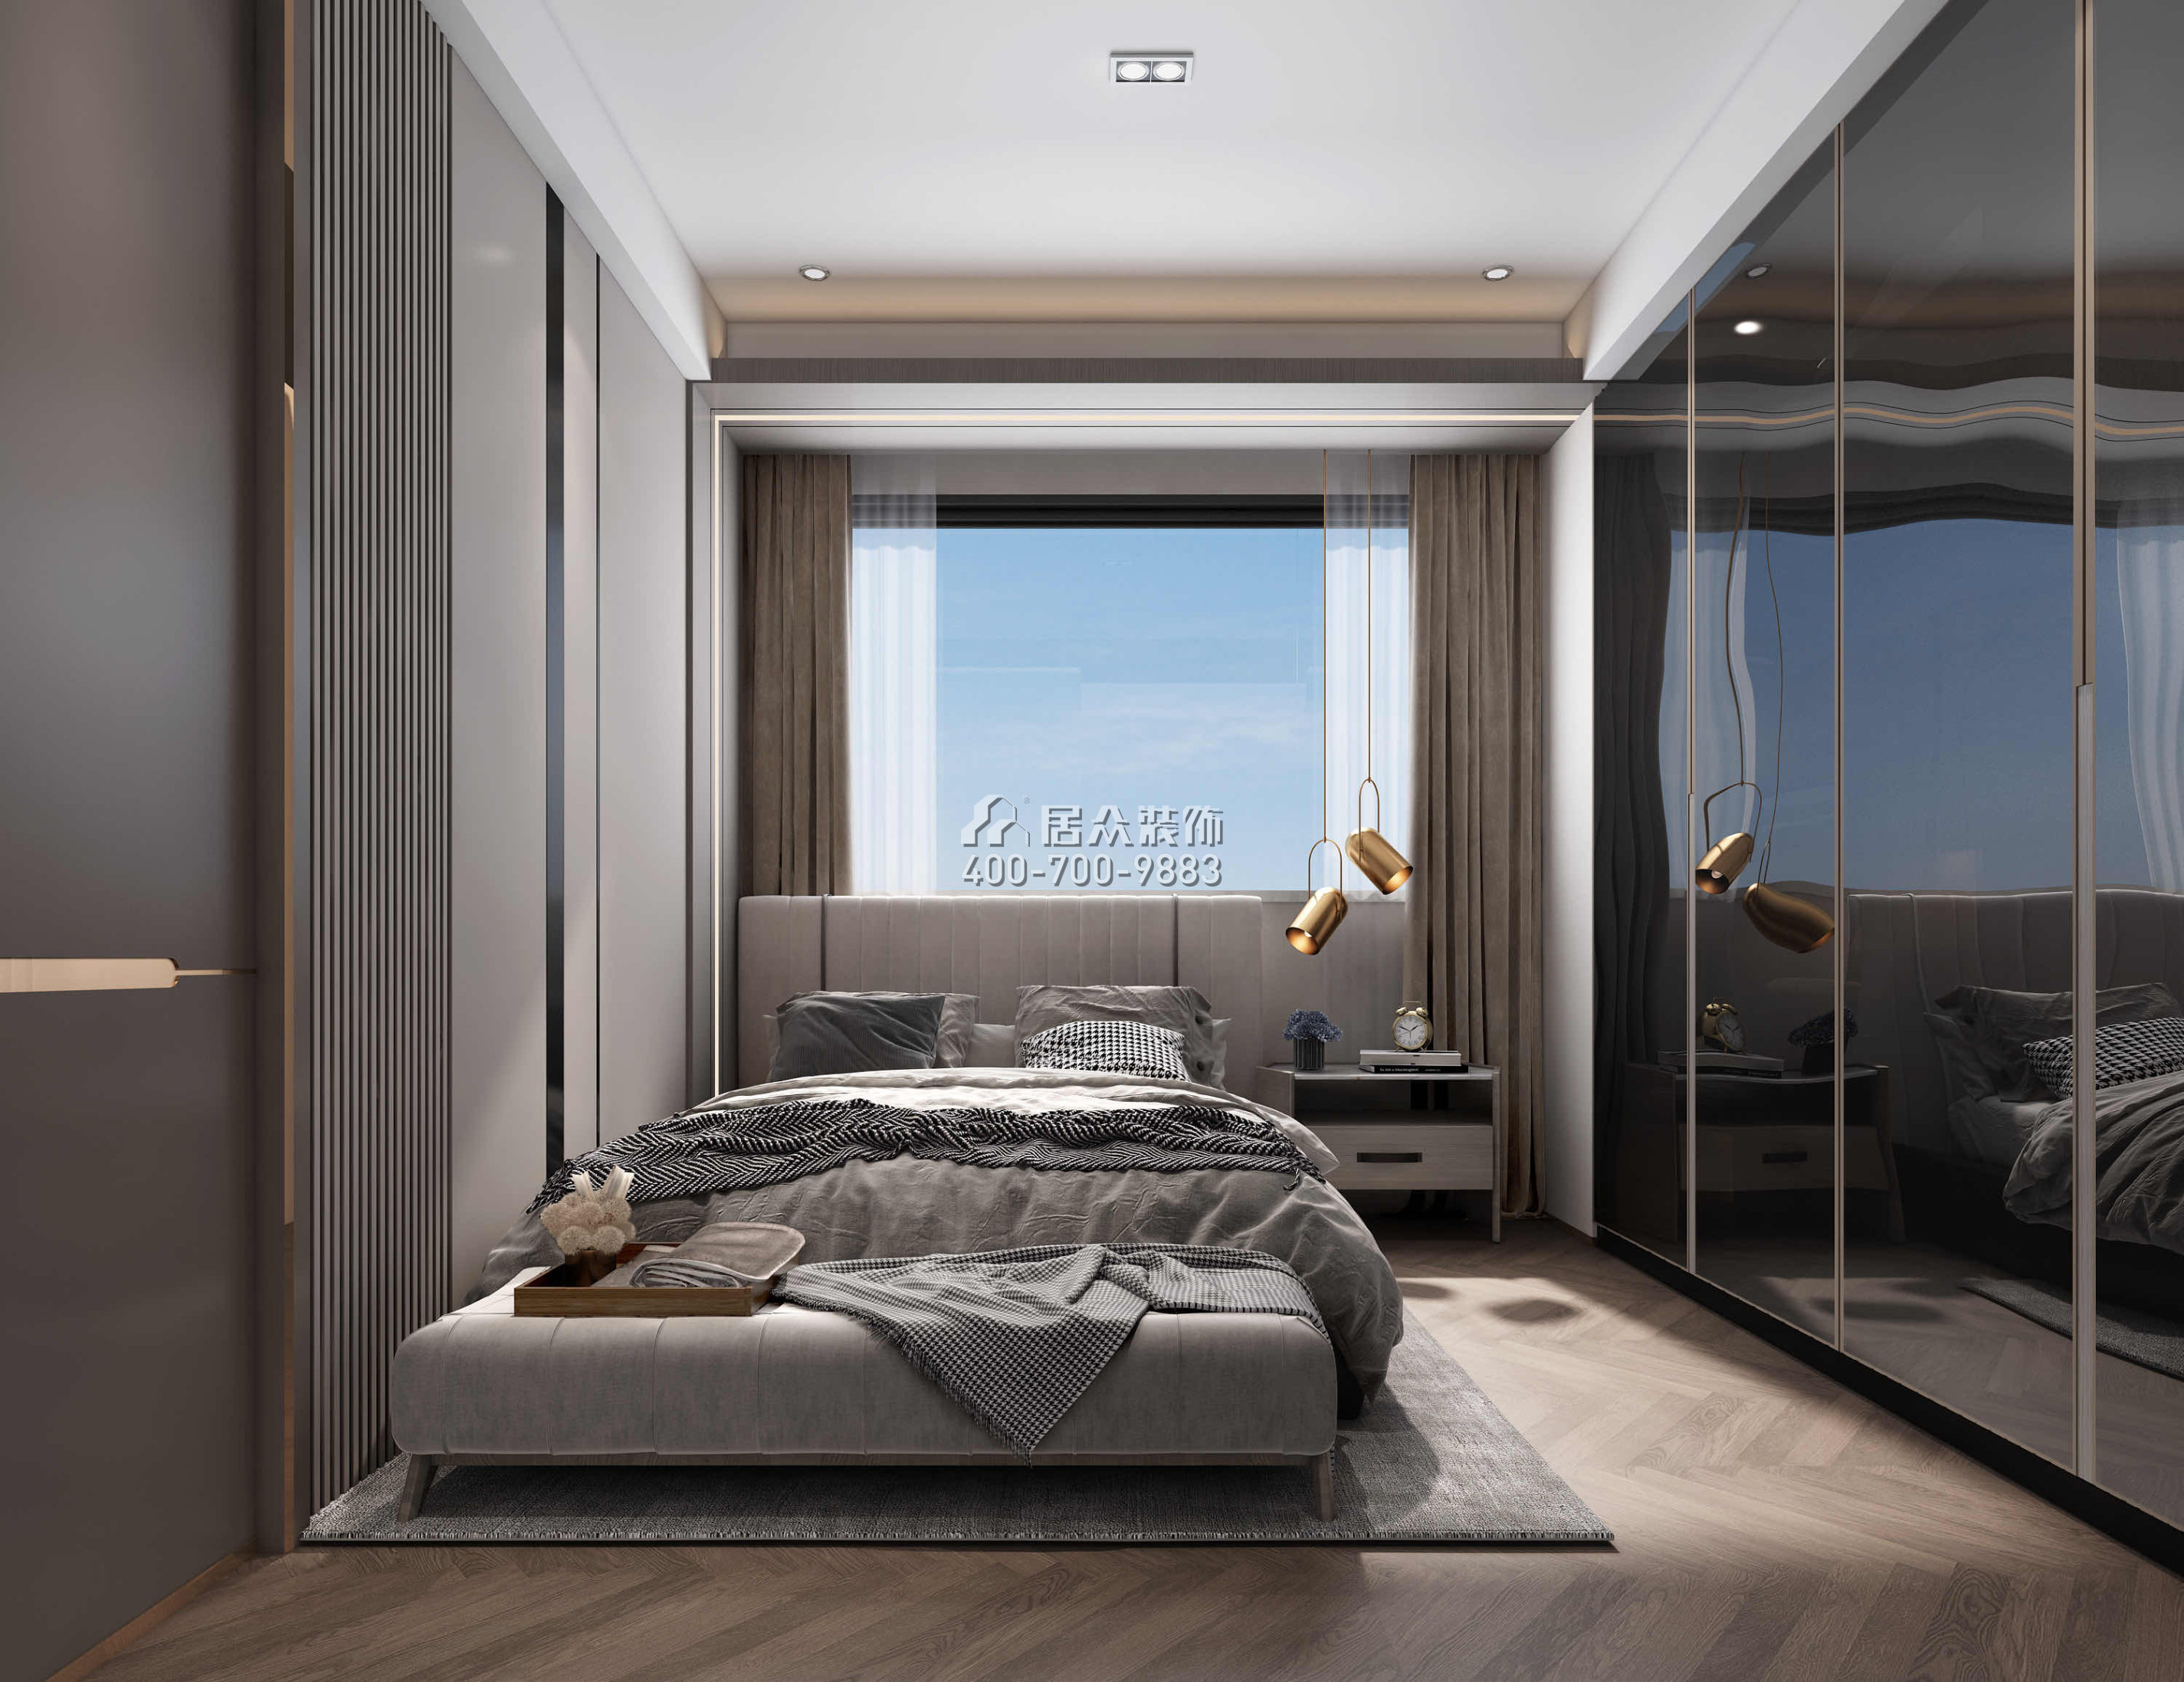 天鵝堡370平方米現代簡約風格平層戶型臥室裝修效果圖